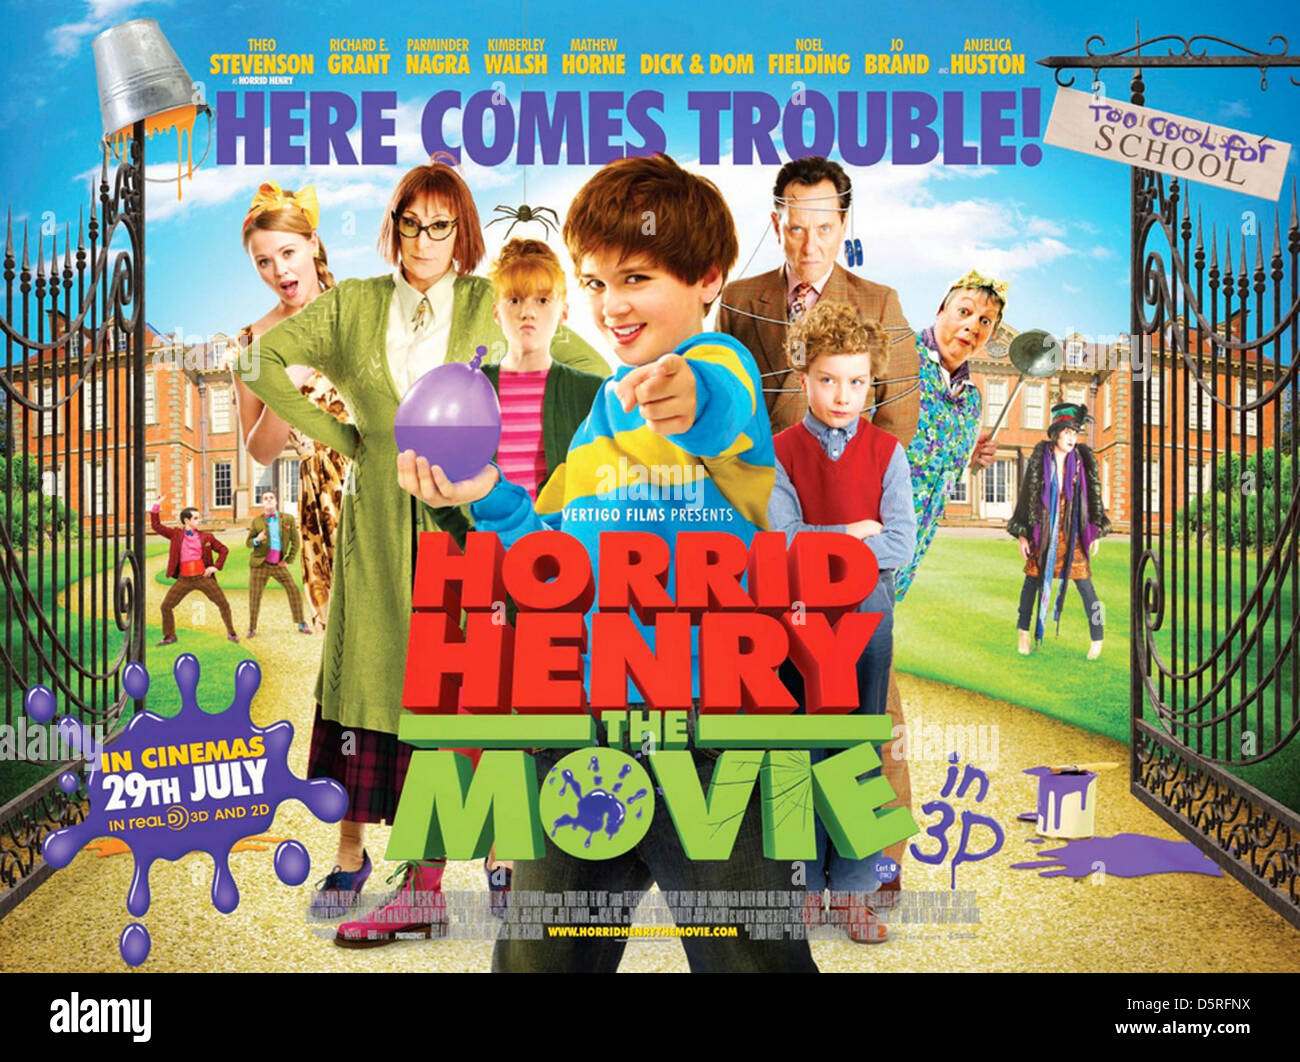 HORRID HENRY : THE MOVIE Poster for 2013 Vertigo Films production Stock Photo